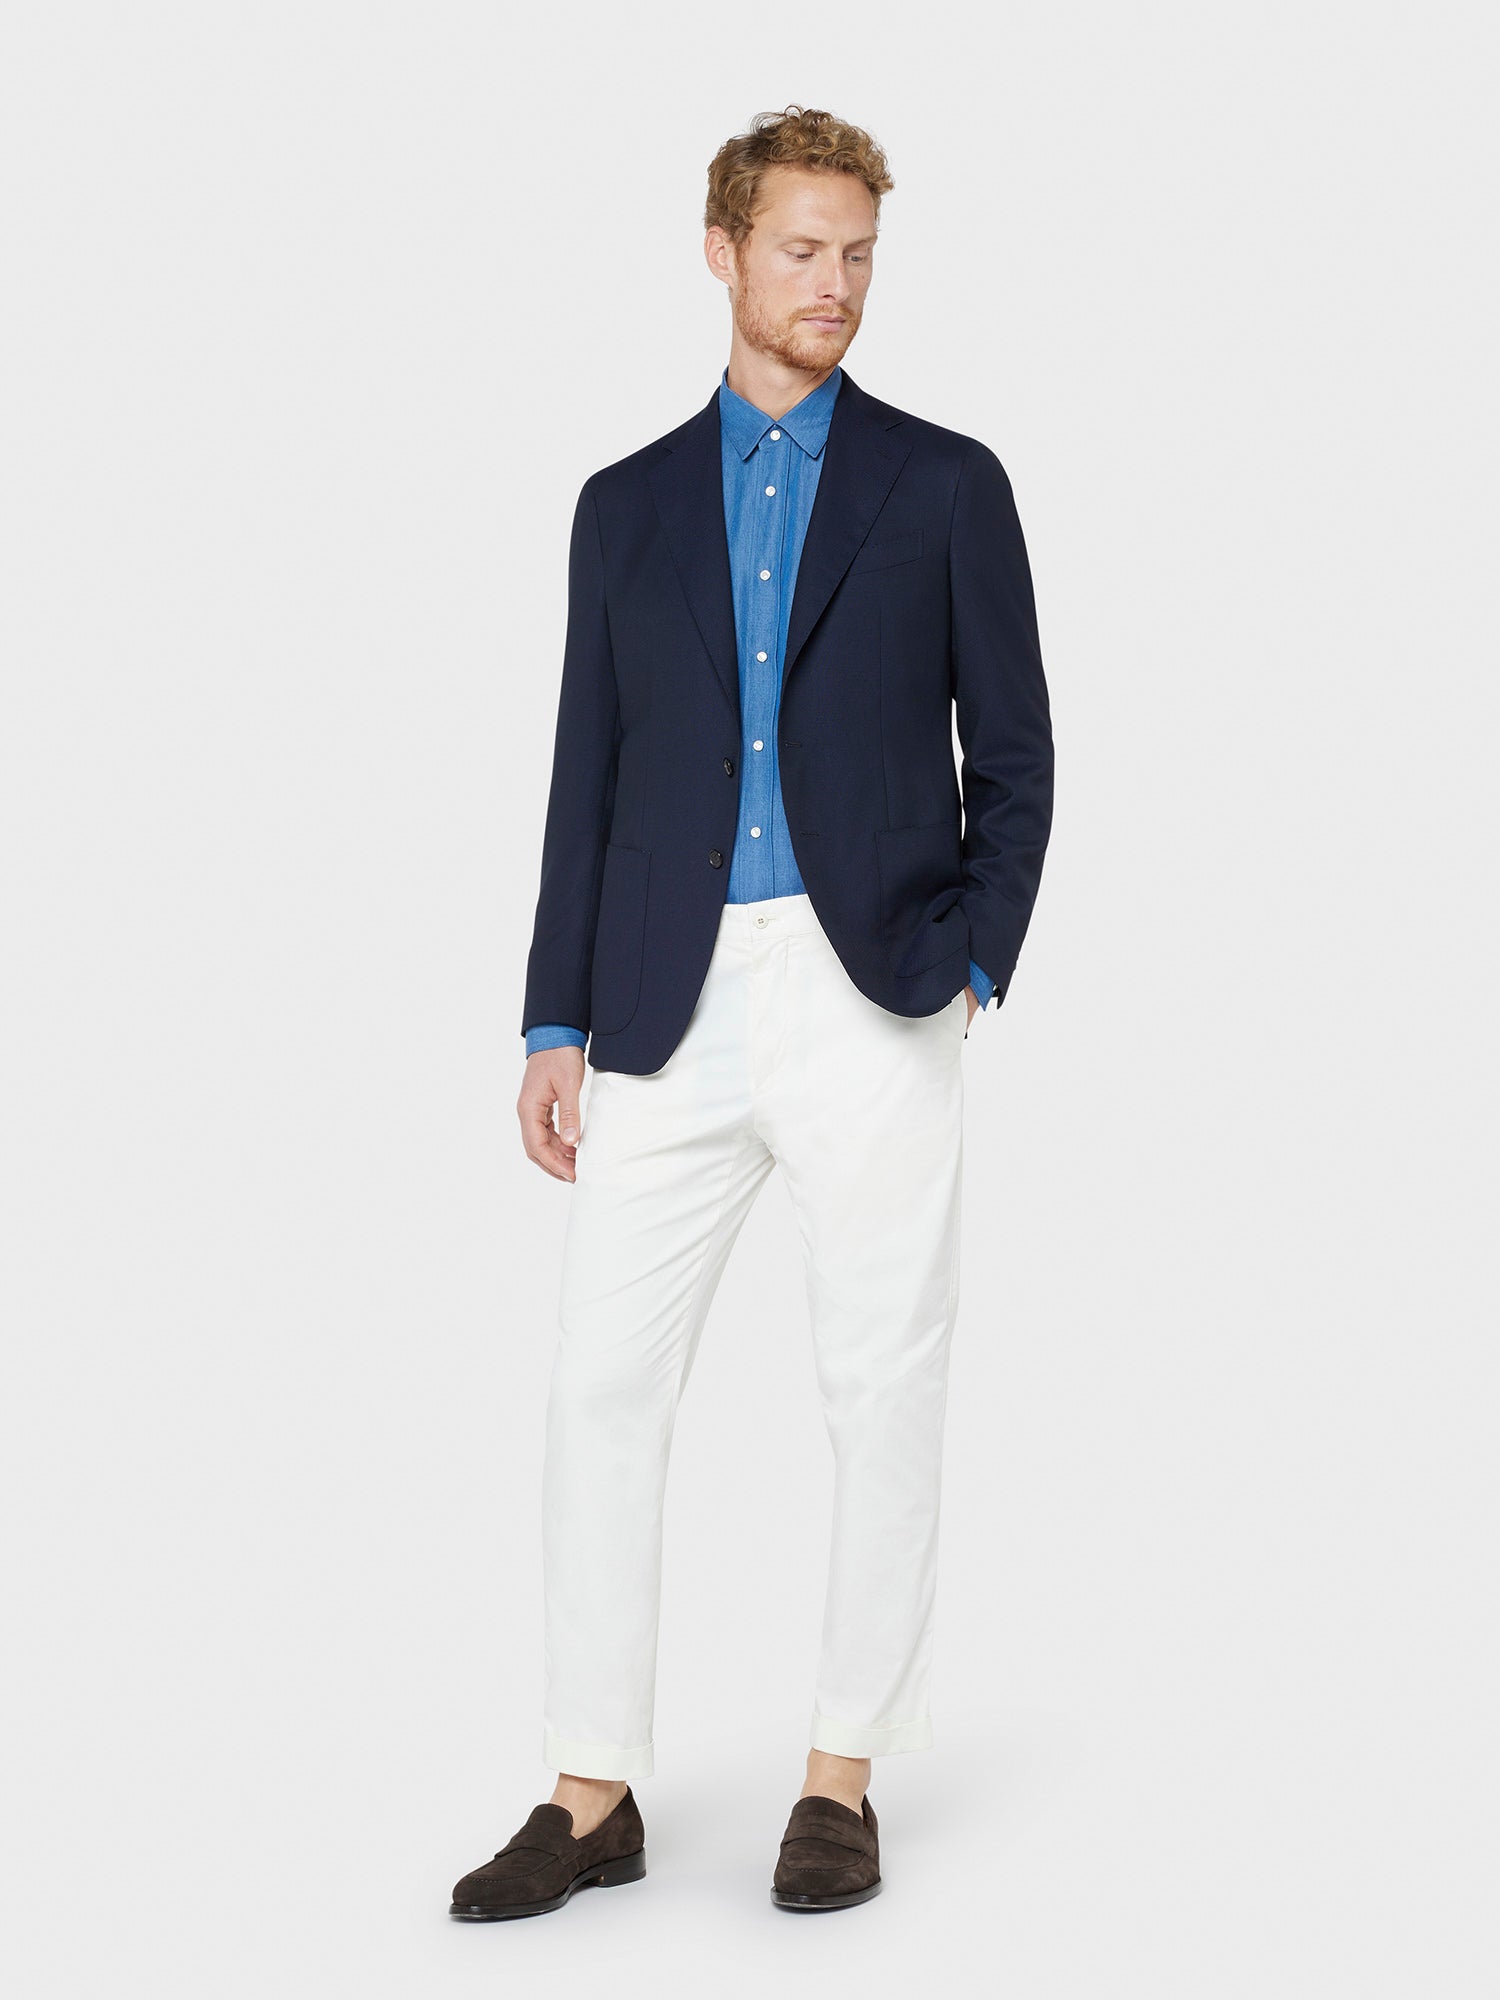 Caruso Menswear Abbigliamento Uomo Camicia in tencel colore blu jeans total look